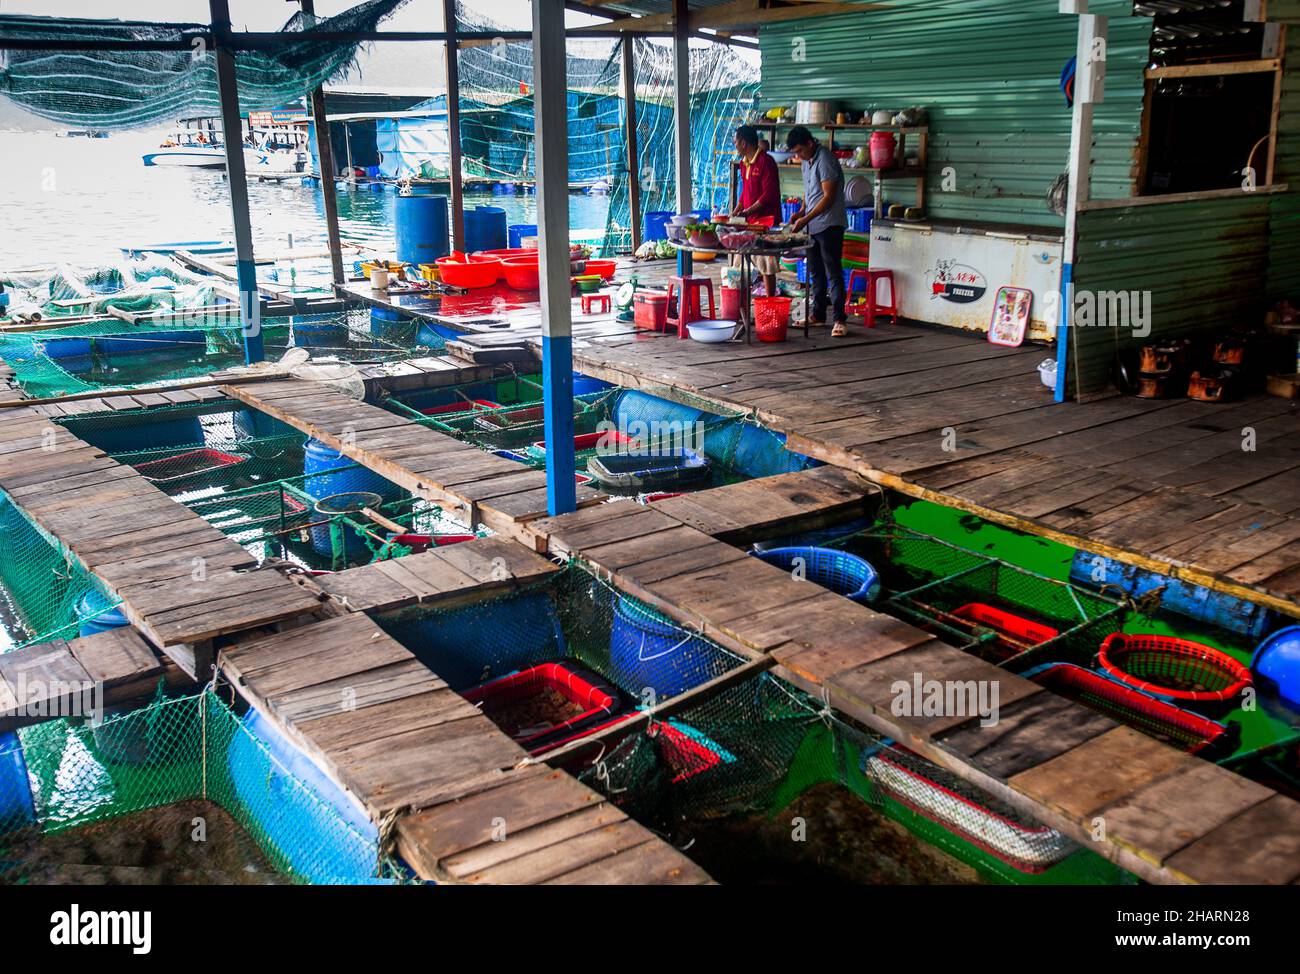 Poissons frais tenant des chars dans un restaurant dans un village de pêcheurs vietnamien.Populaire auprès des compagnies de voyage et des touristes. Banque D'Images